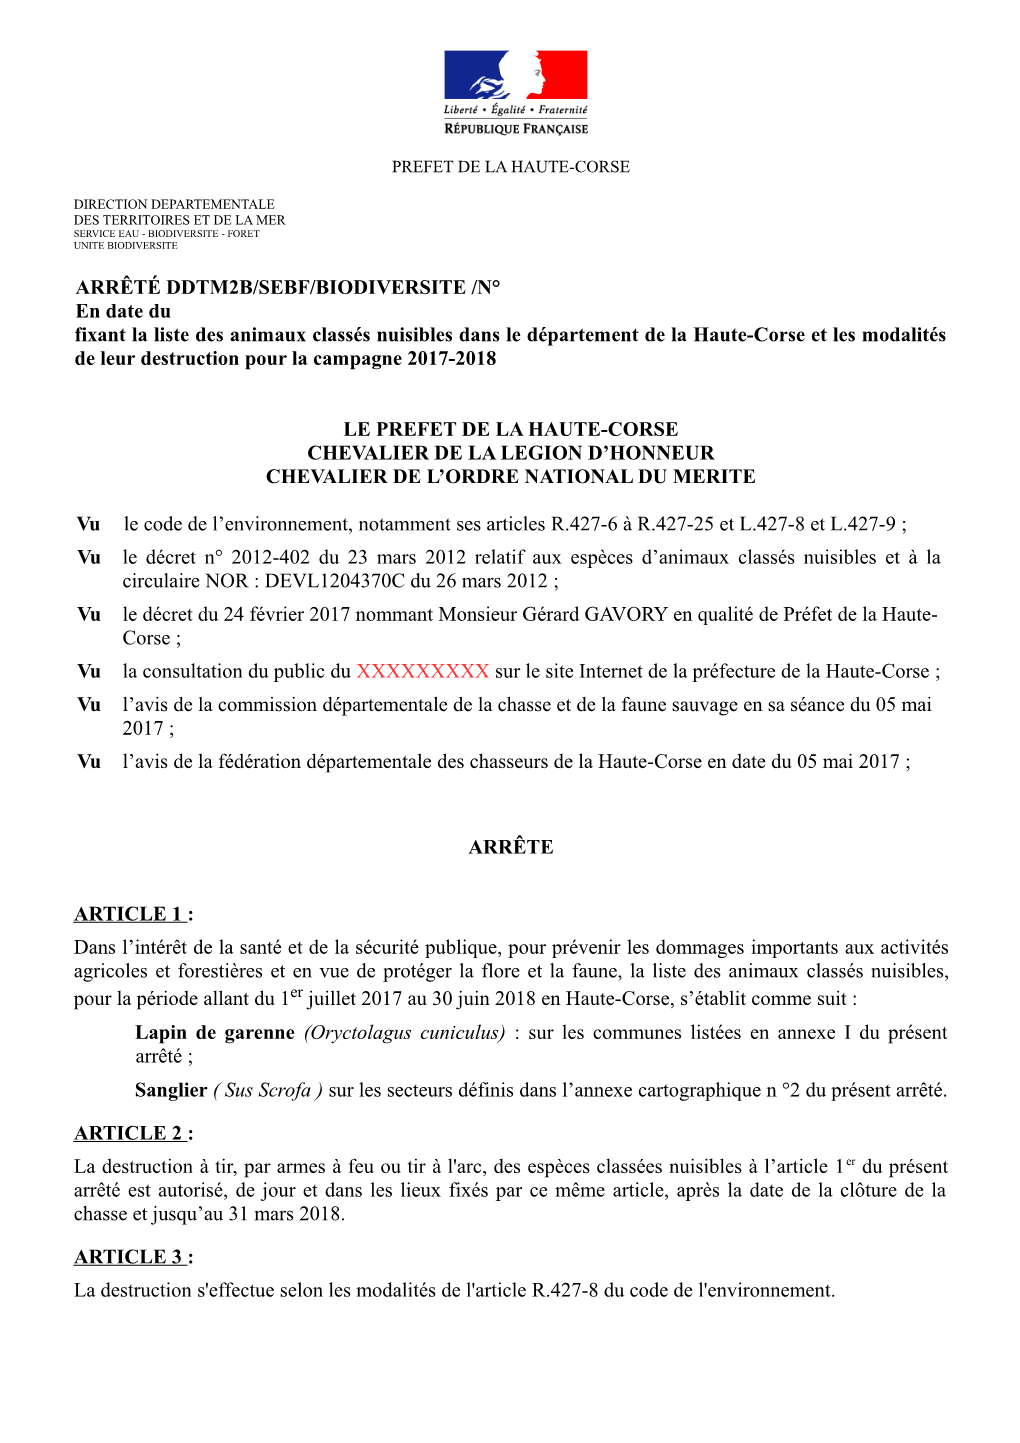 ARRÊTÉ DDTM2B/SEBF/BIODIVERSITE /N° En Date Du Fixant La Liste Des Animaux Classés Nuisibles Dans Le Département De La Haut